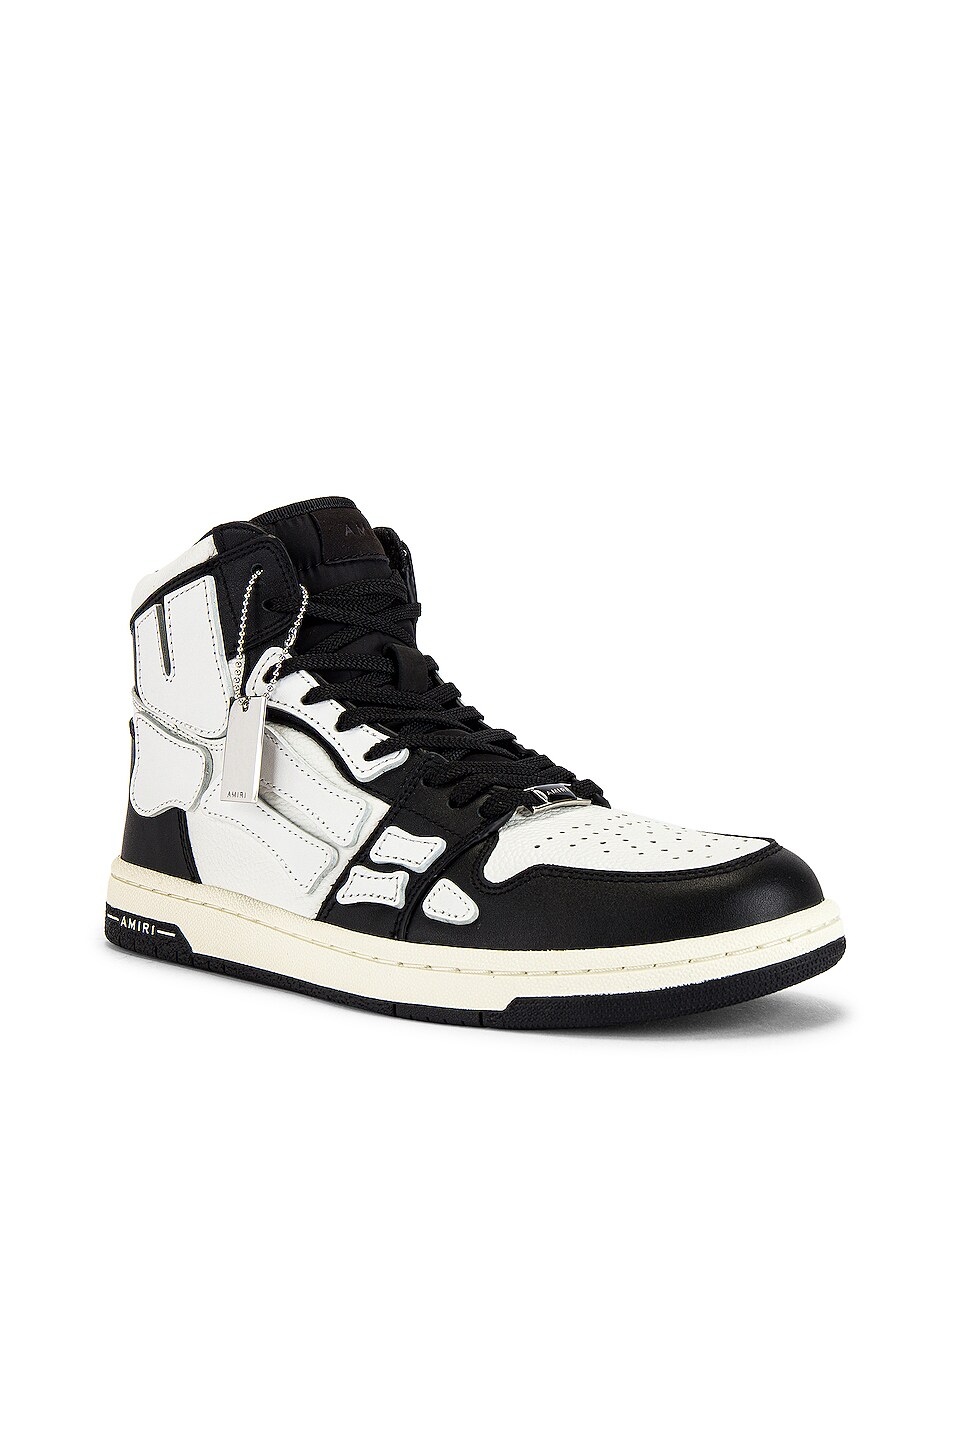 Image 1 of Amiri Skel Hi-Top Sneakers in Black & White